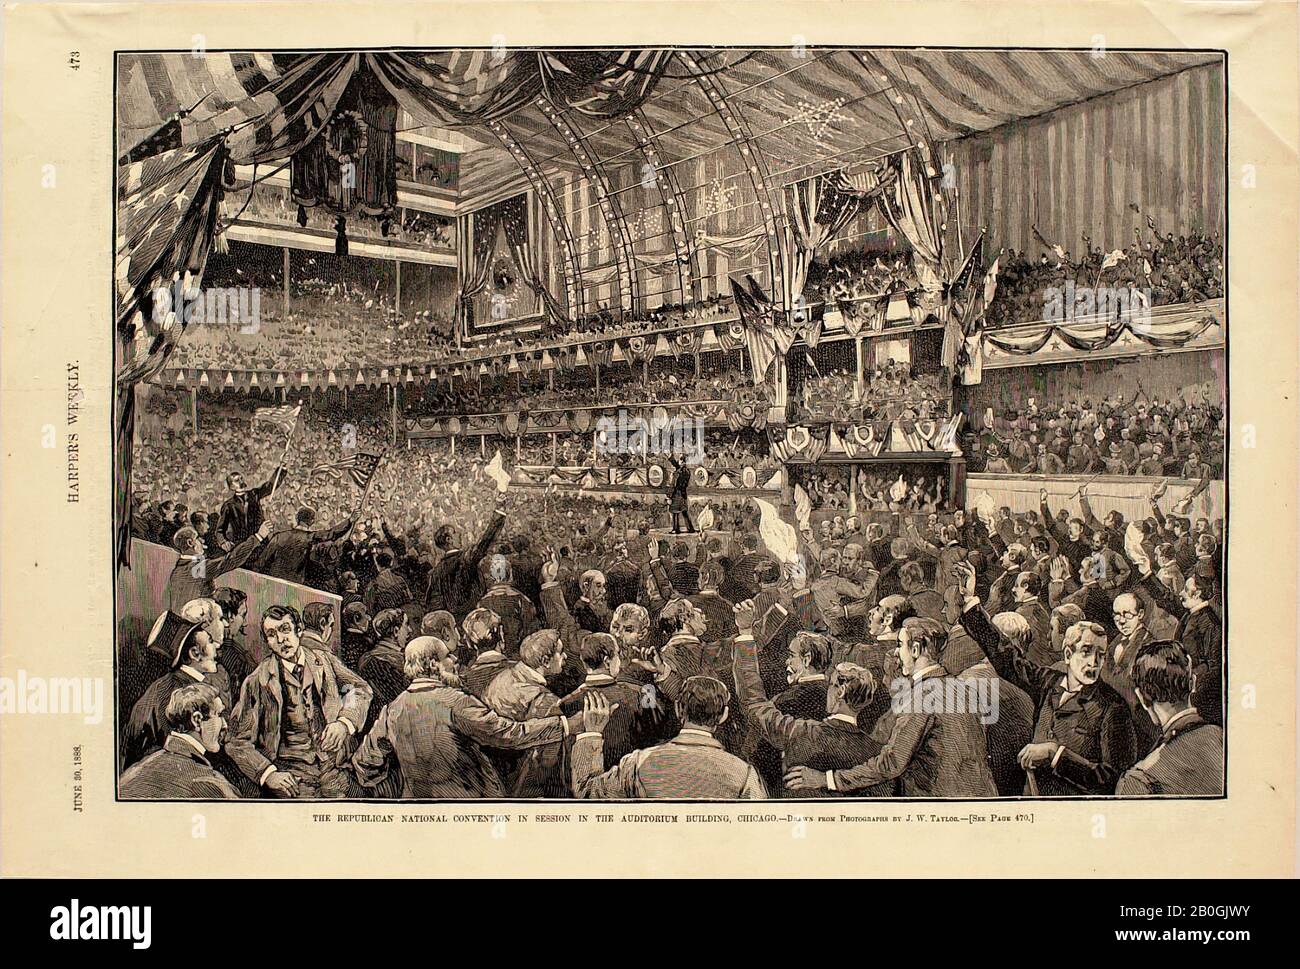 John Wilson Taylor, americano, morto 1918, il congresso nazionale repubblicano nella sessione nell'edificio dell'Auditorium, Chicago, 1888, incisione del legno sulla carta, immagine: 9 5/16 x 13 3/4 in. (23,6 x 35 cm Foto Stock